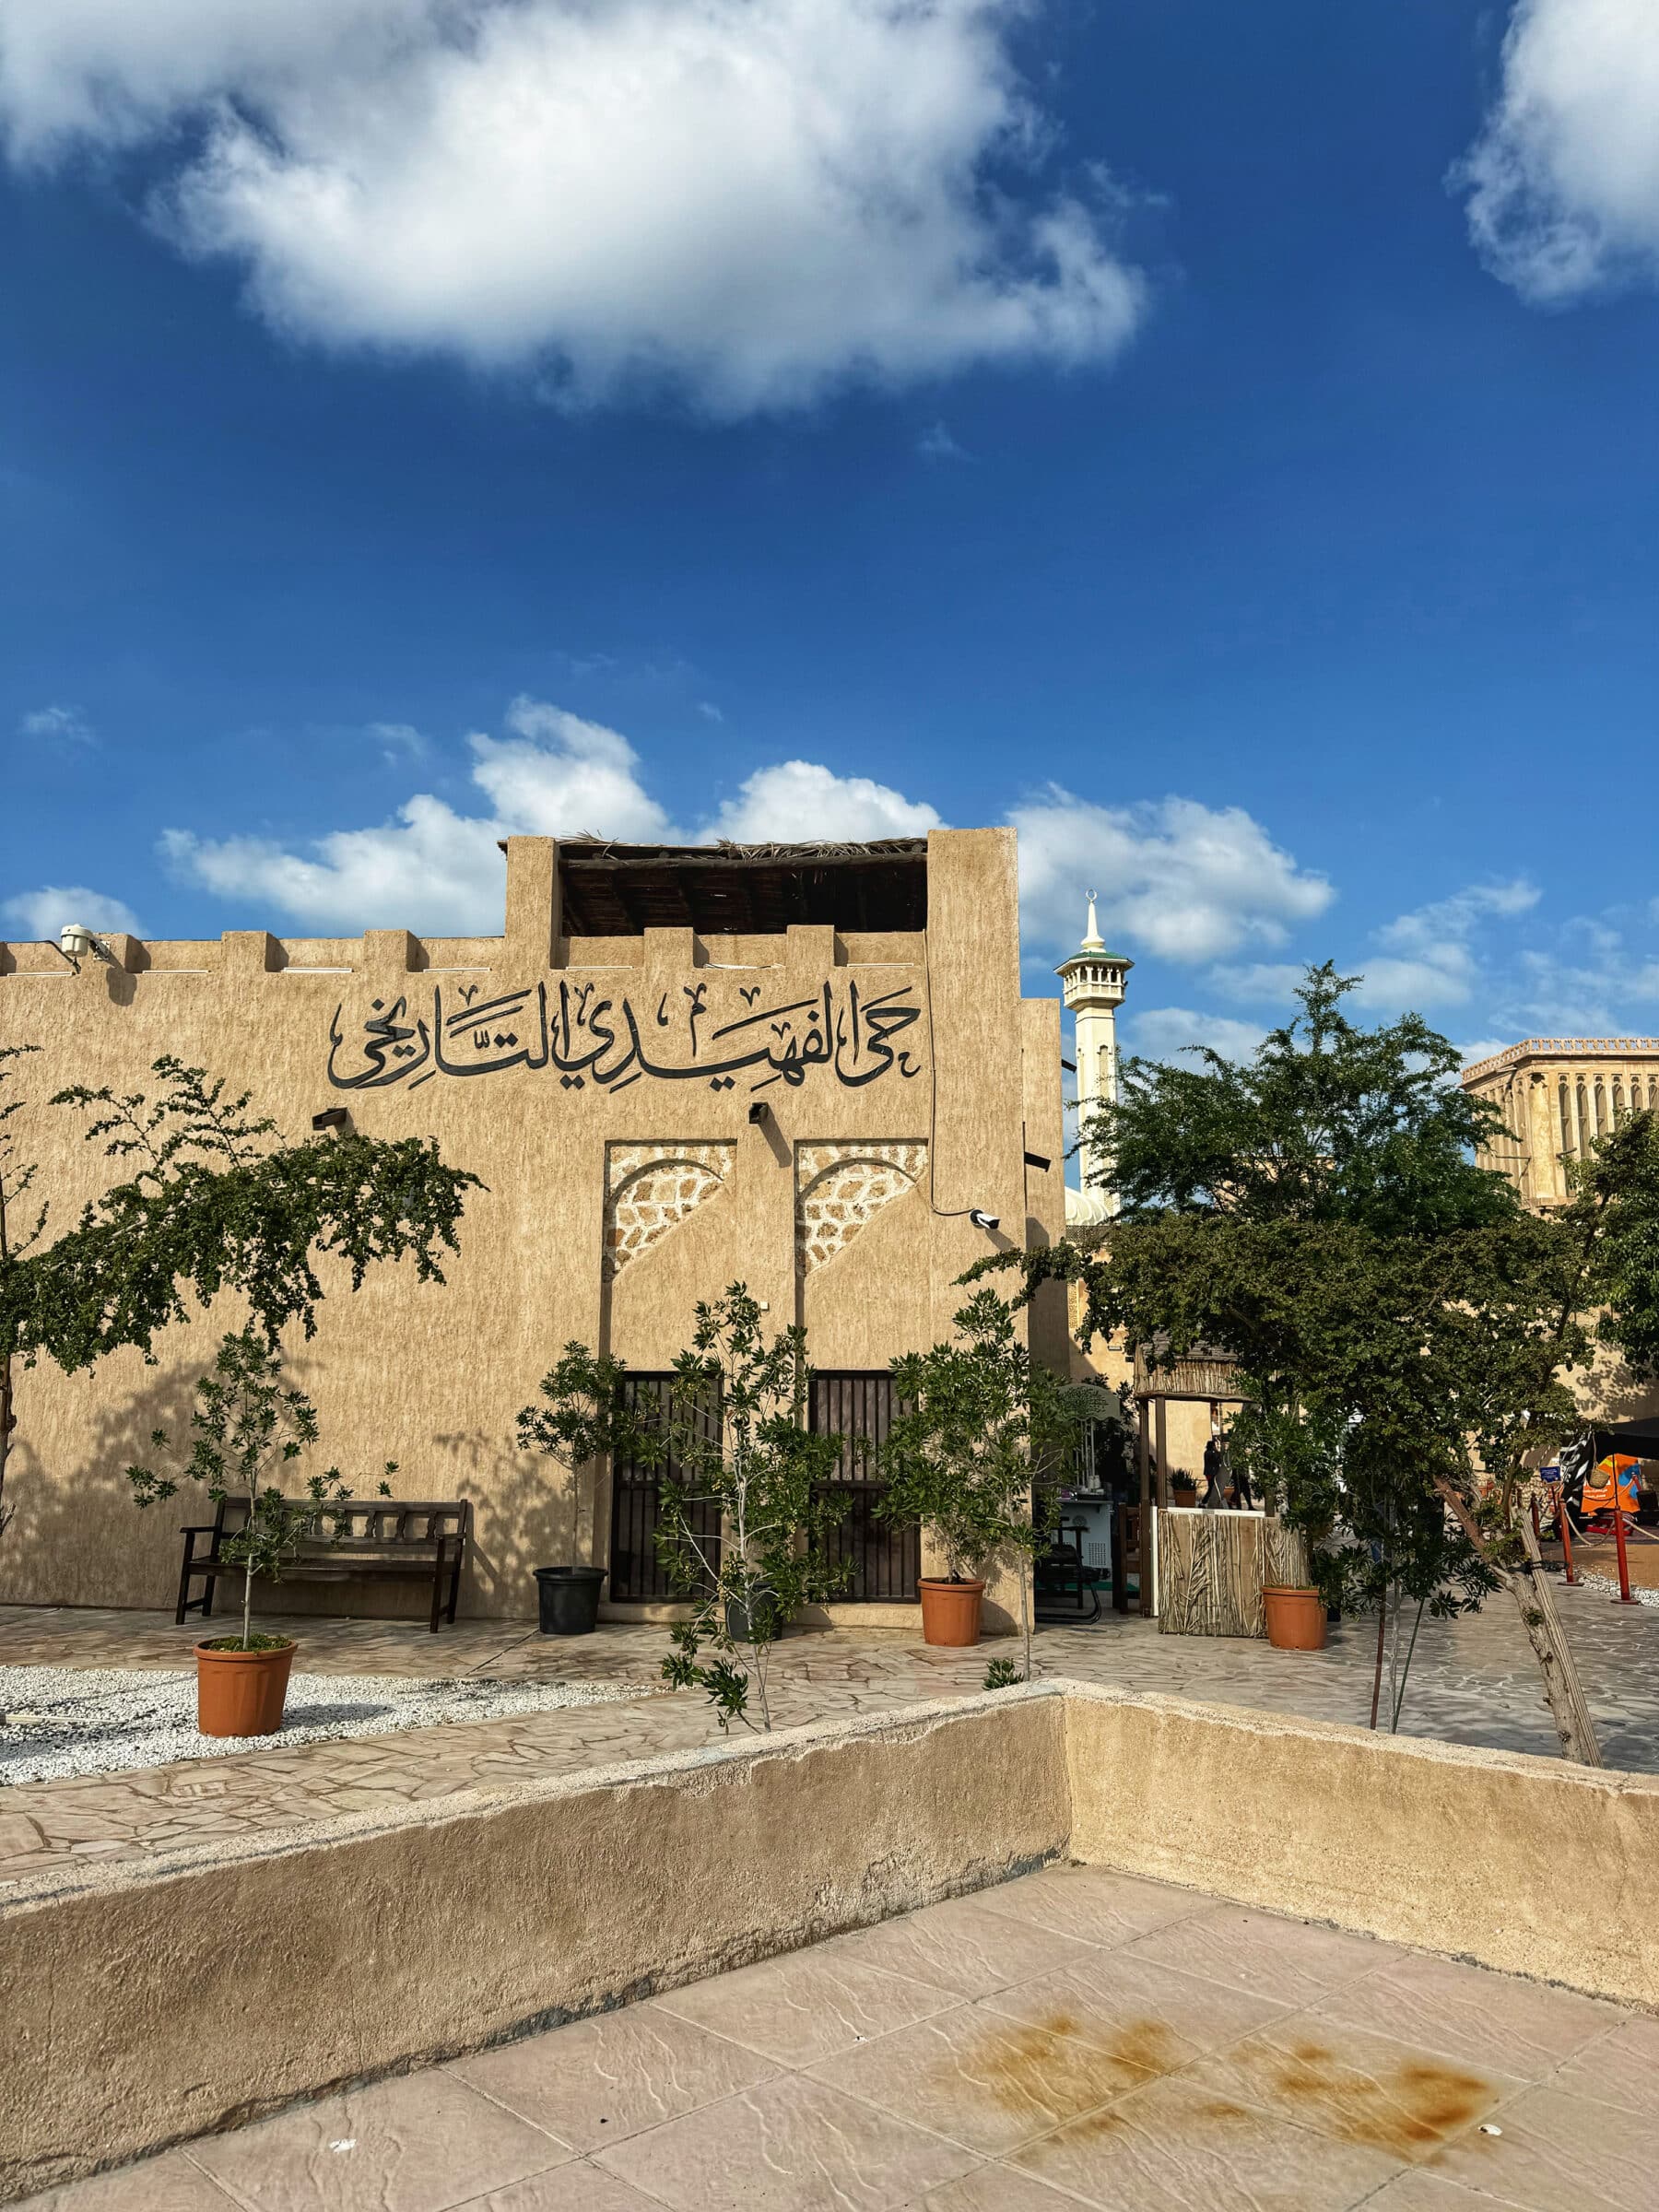 De wijk Al Fahidi is een soort openluchtmuseum